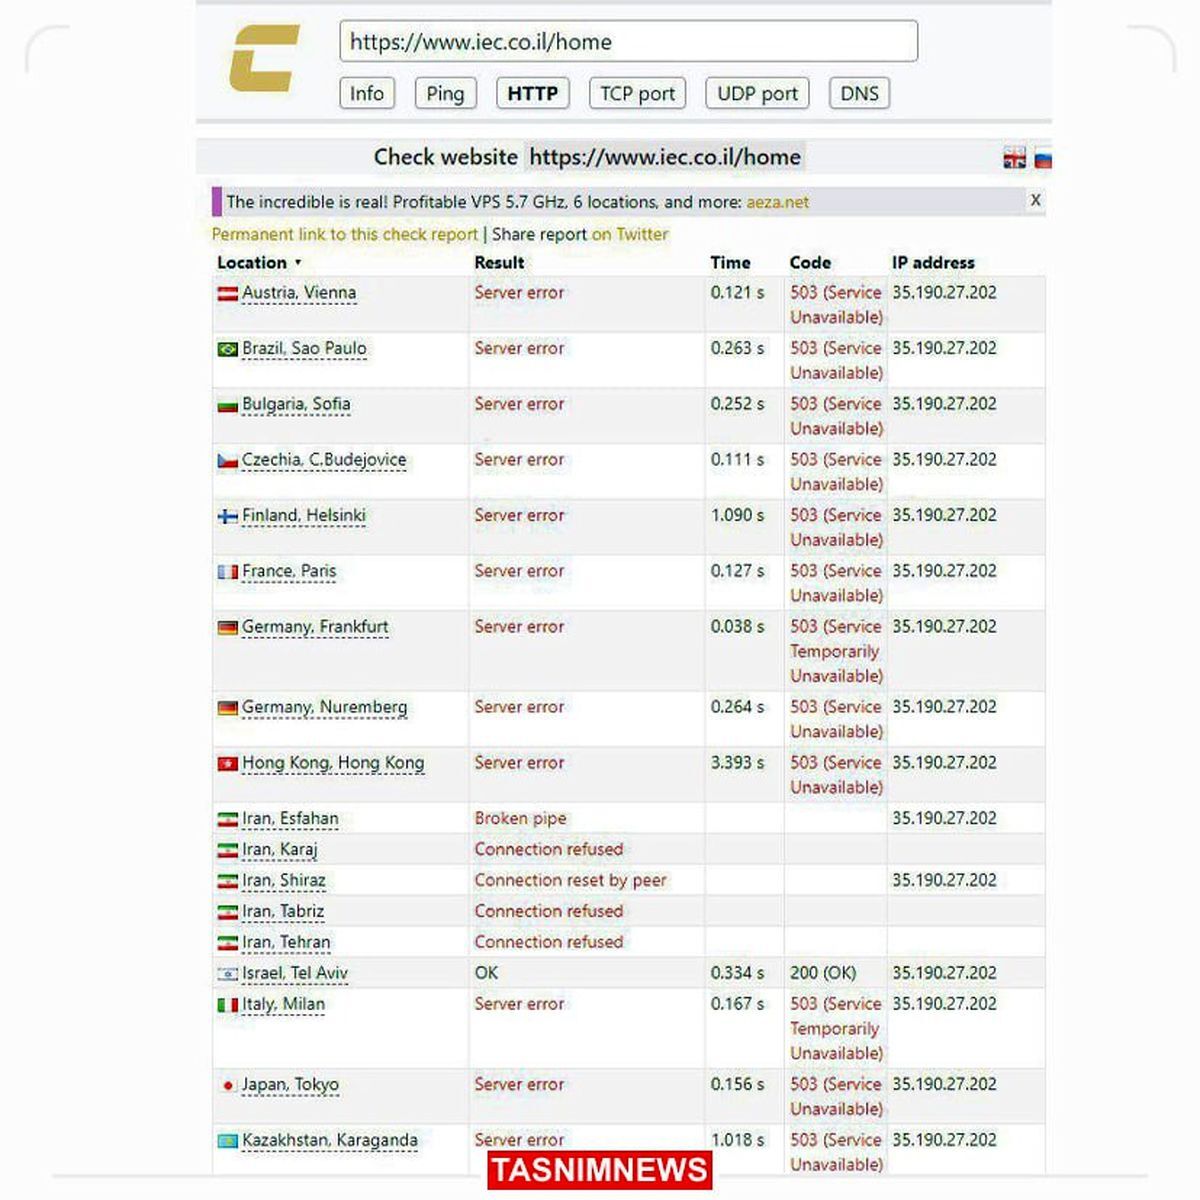 سایت شرکت ملی برق اسرائیل هم هک شد